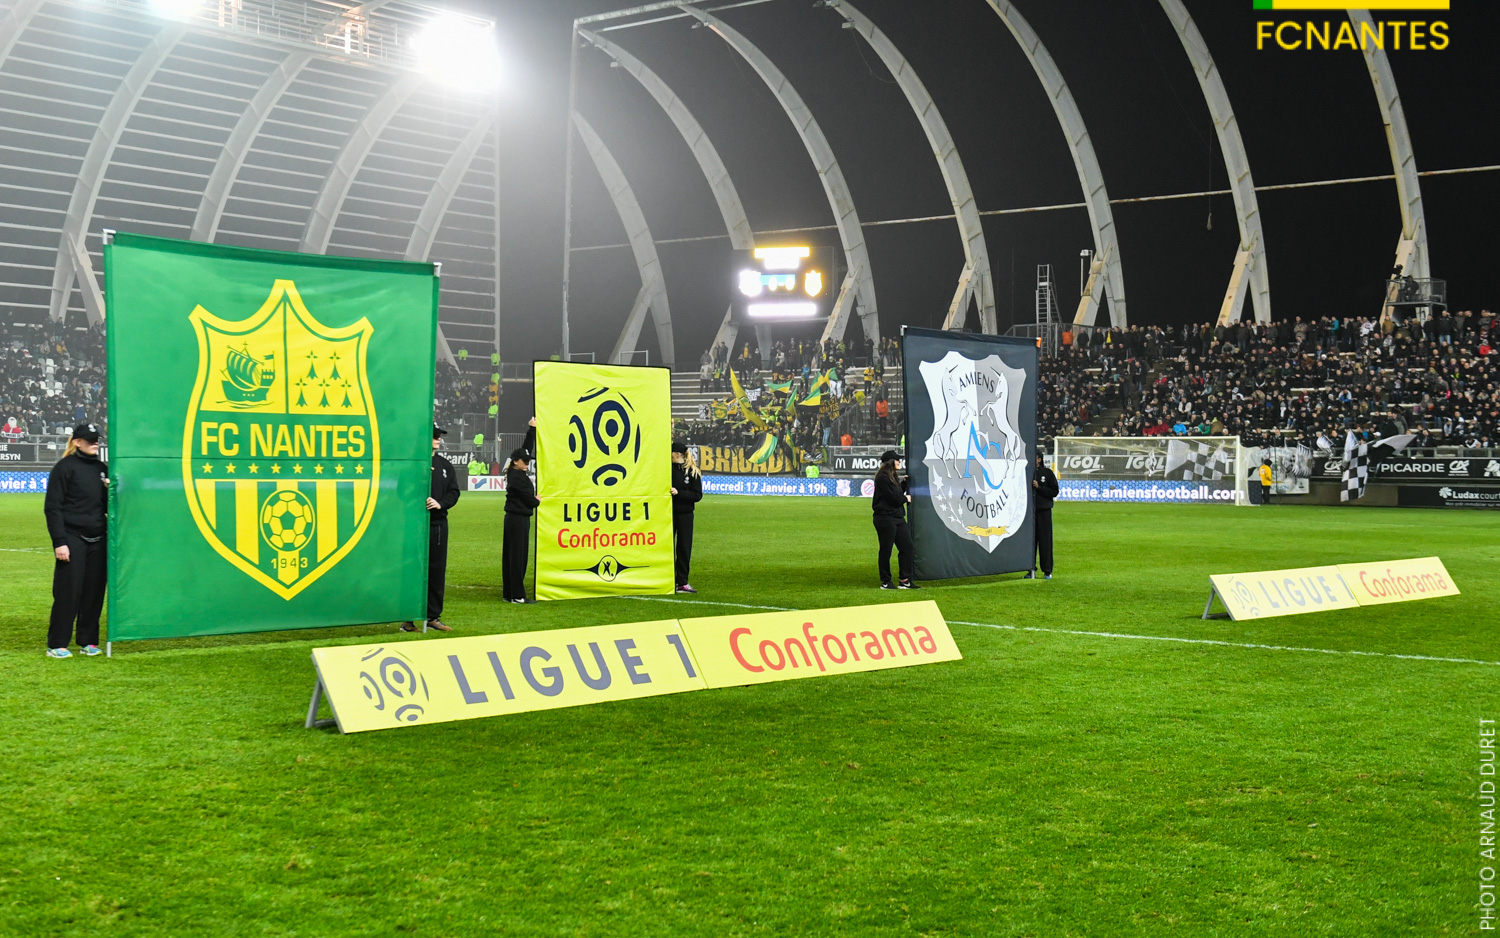 Ligue 1. La rencontre Nantes - Amiens décalée au dimanche 21 avril